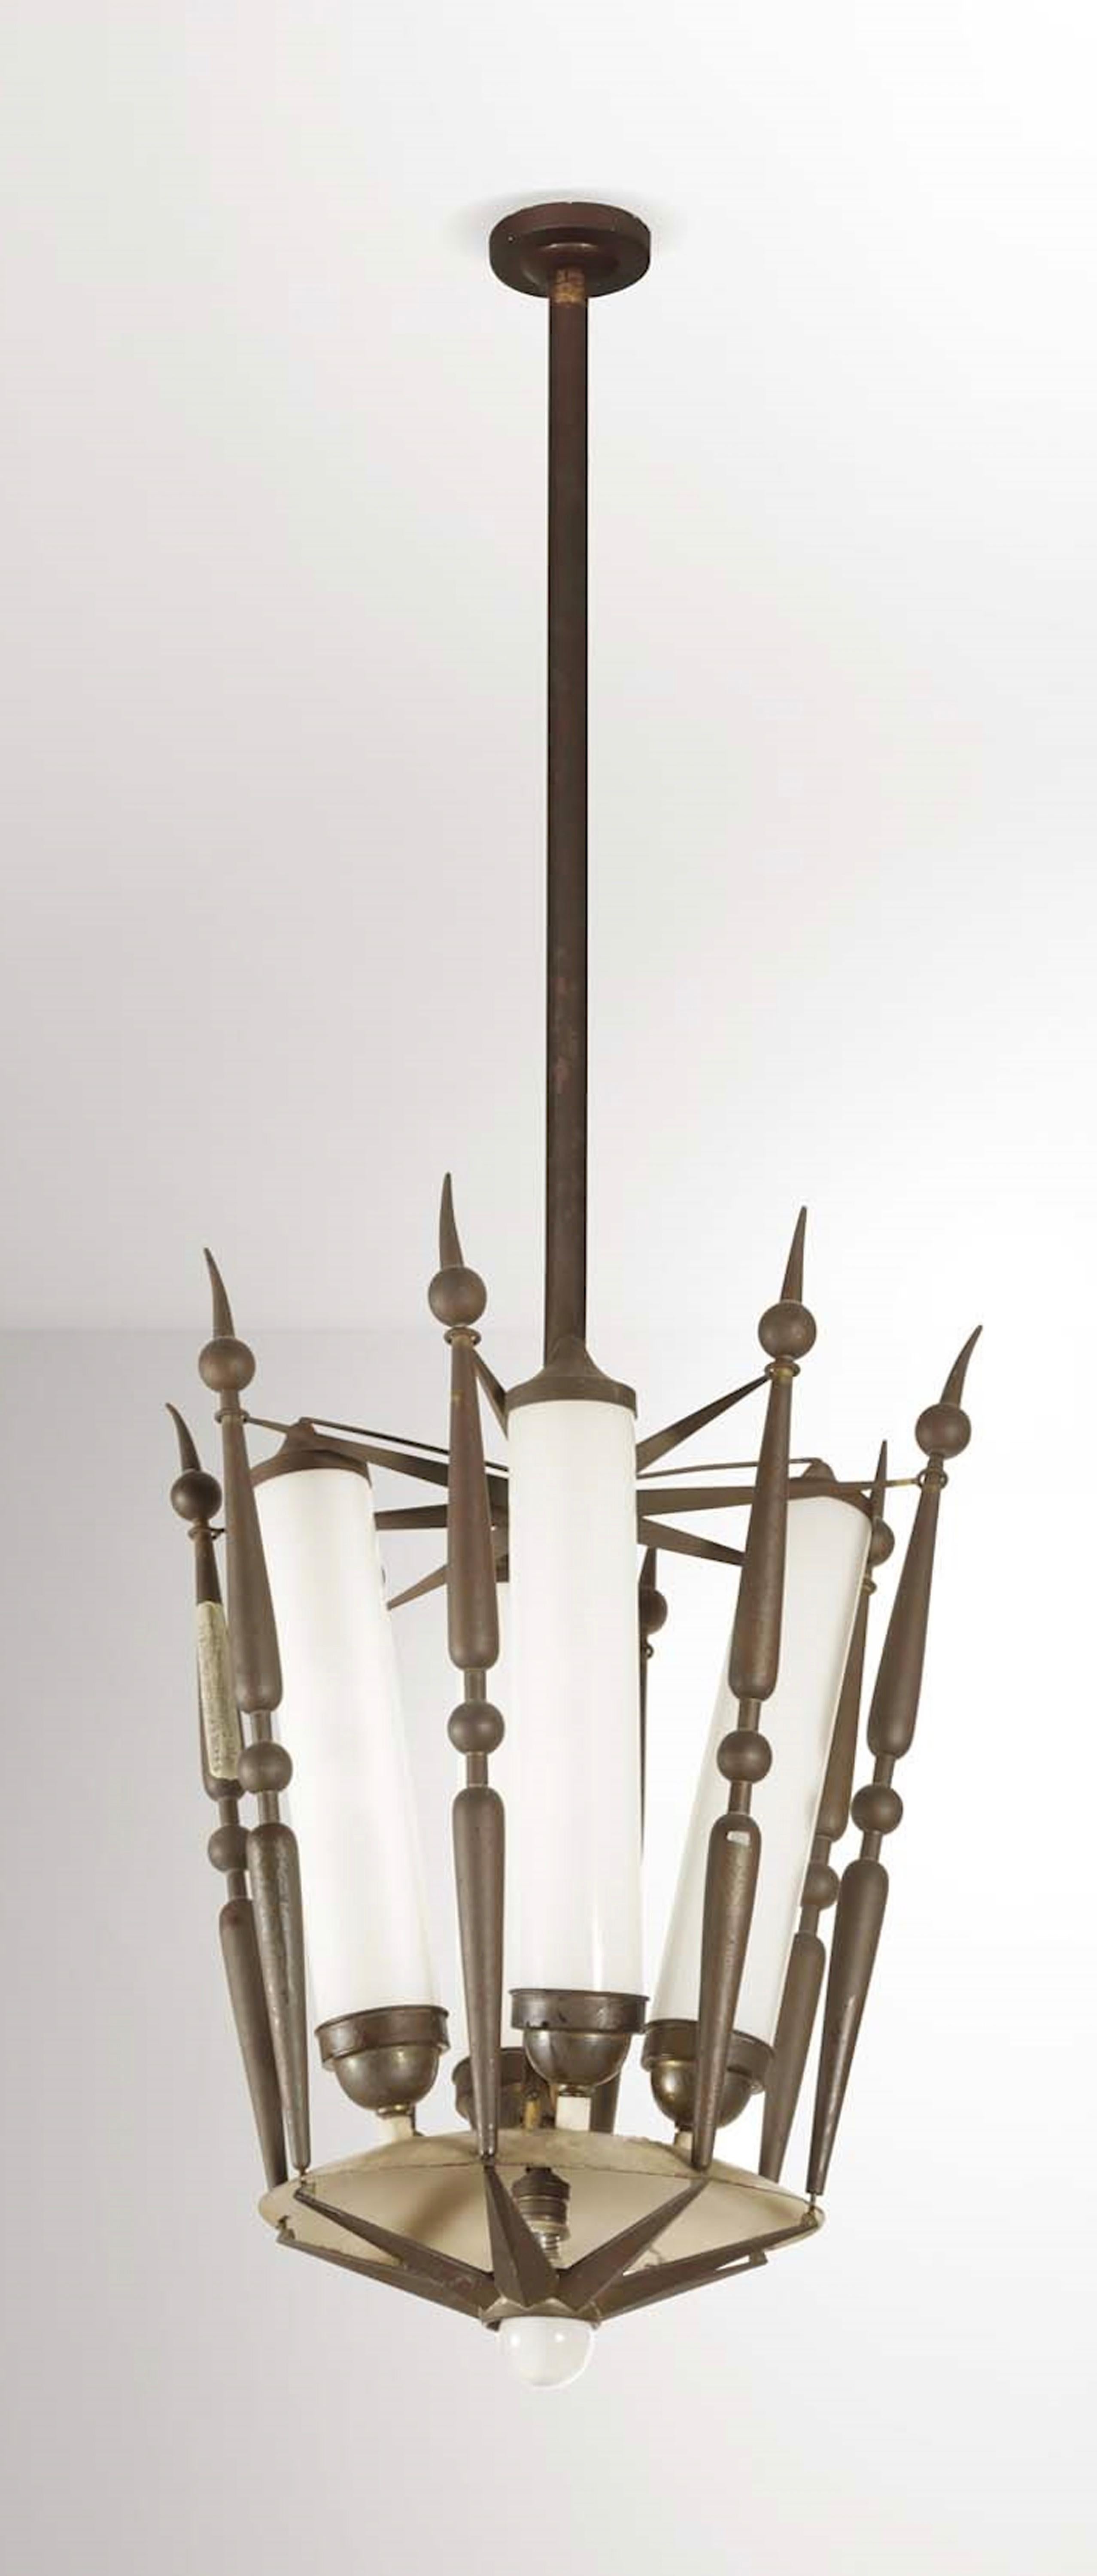 Pair of chandelier by Tommaso Buzzi - Produzione Donzelli, 1950s.